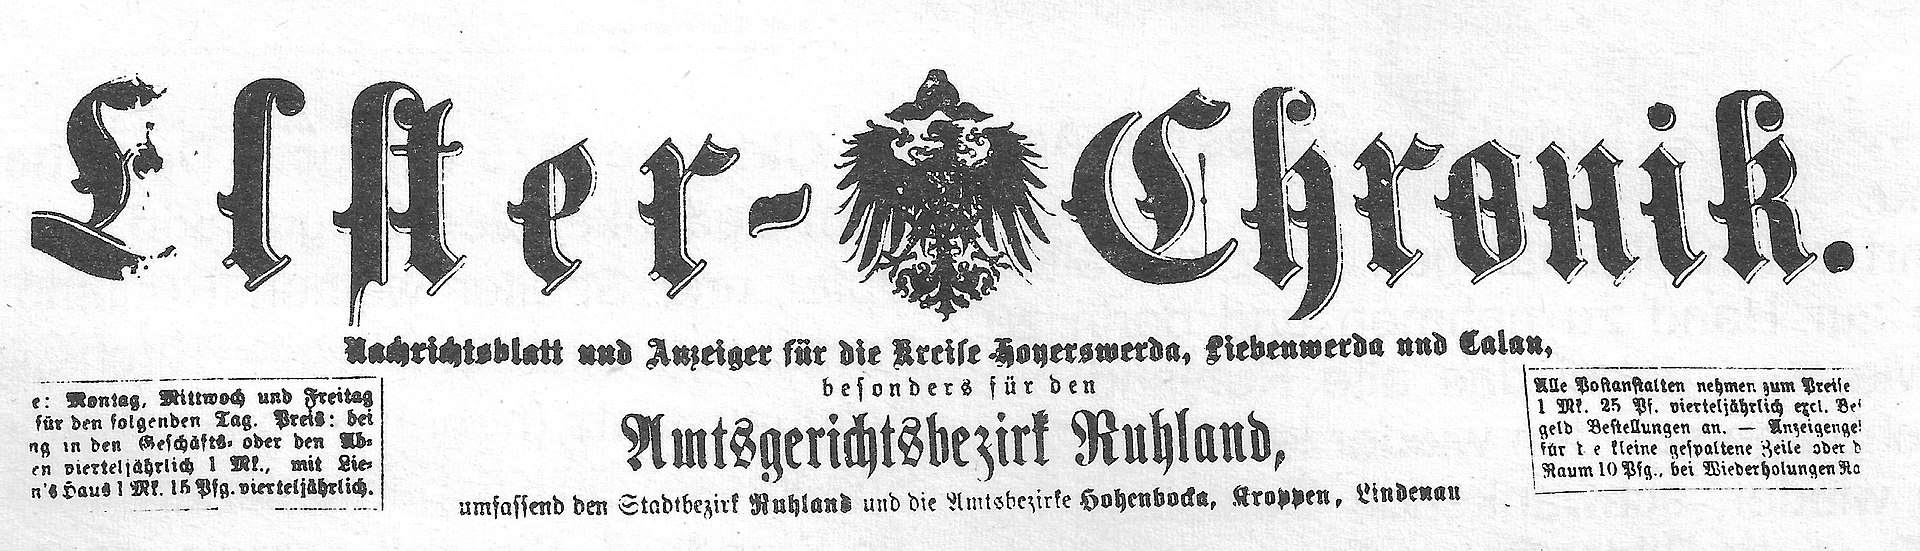 A12 Cover Elster-Chronik,_Oktober_1875.jpg